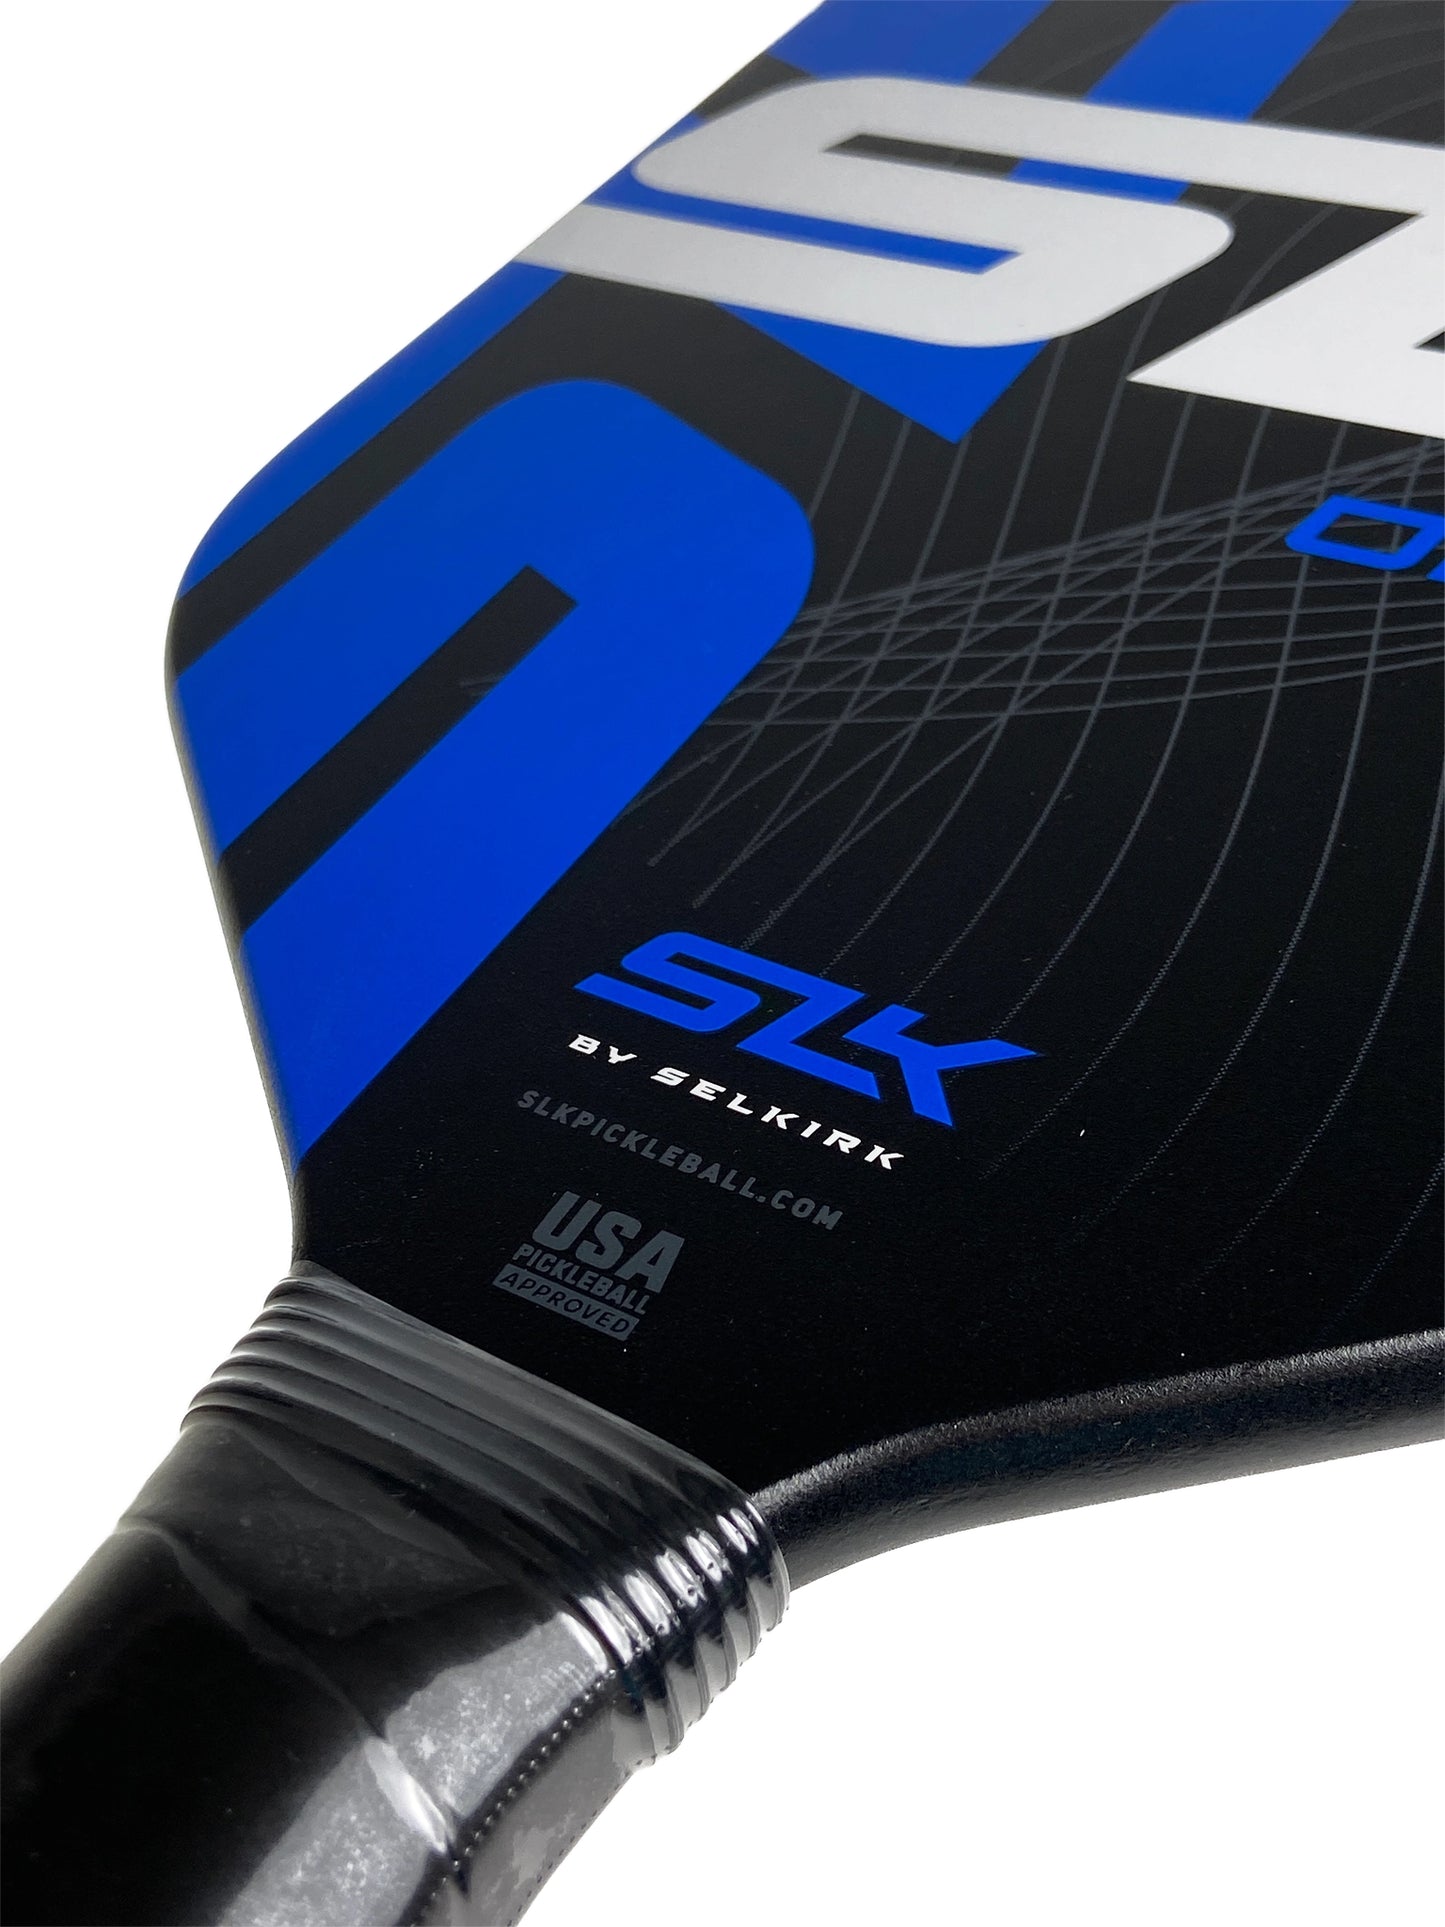 Selkirk SLK Omega XL Graphite - Bleu